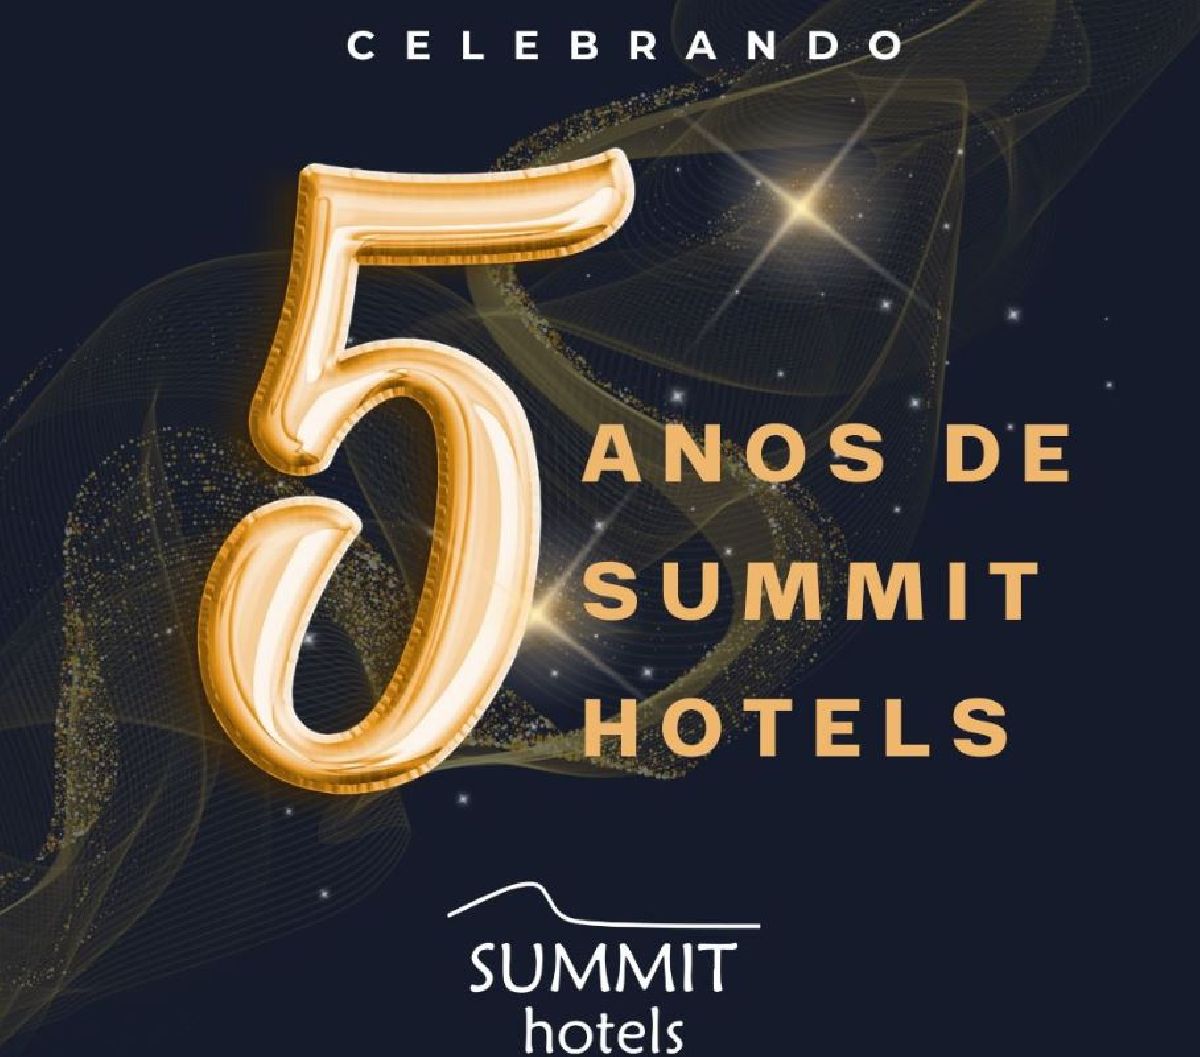 Summit Hotels comemora 5 anos de operação com novas conquistas